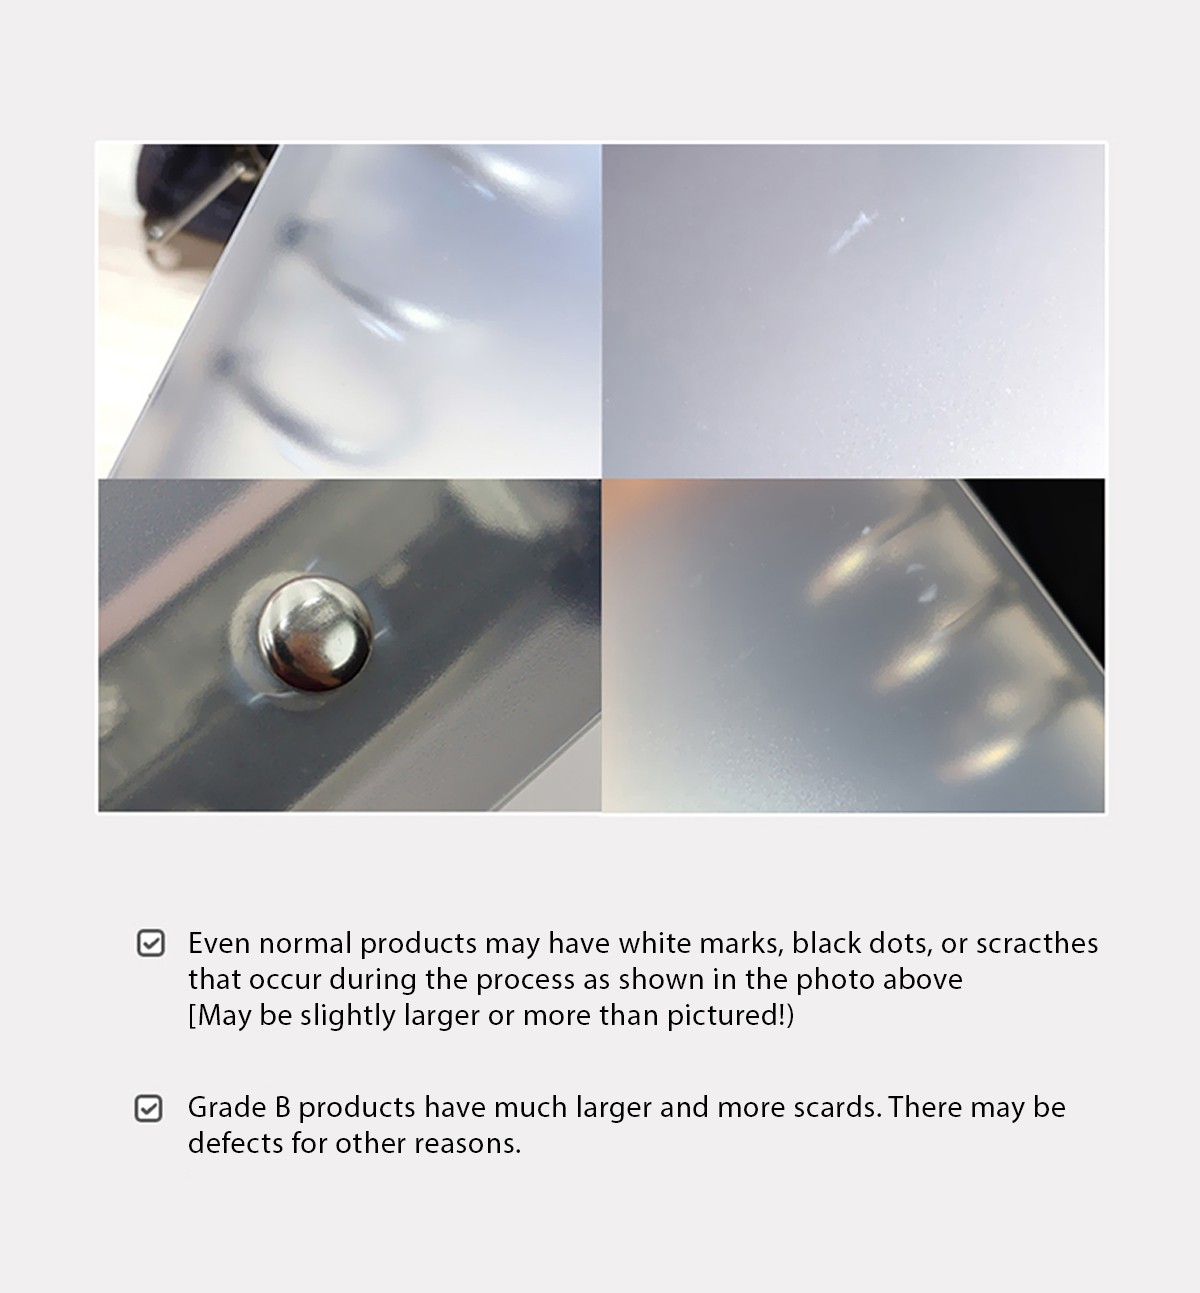 A6 Semi-Clear Zipper Binder Cover [Pastel Serie]